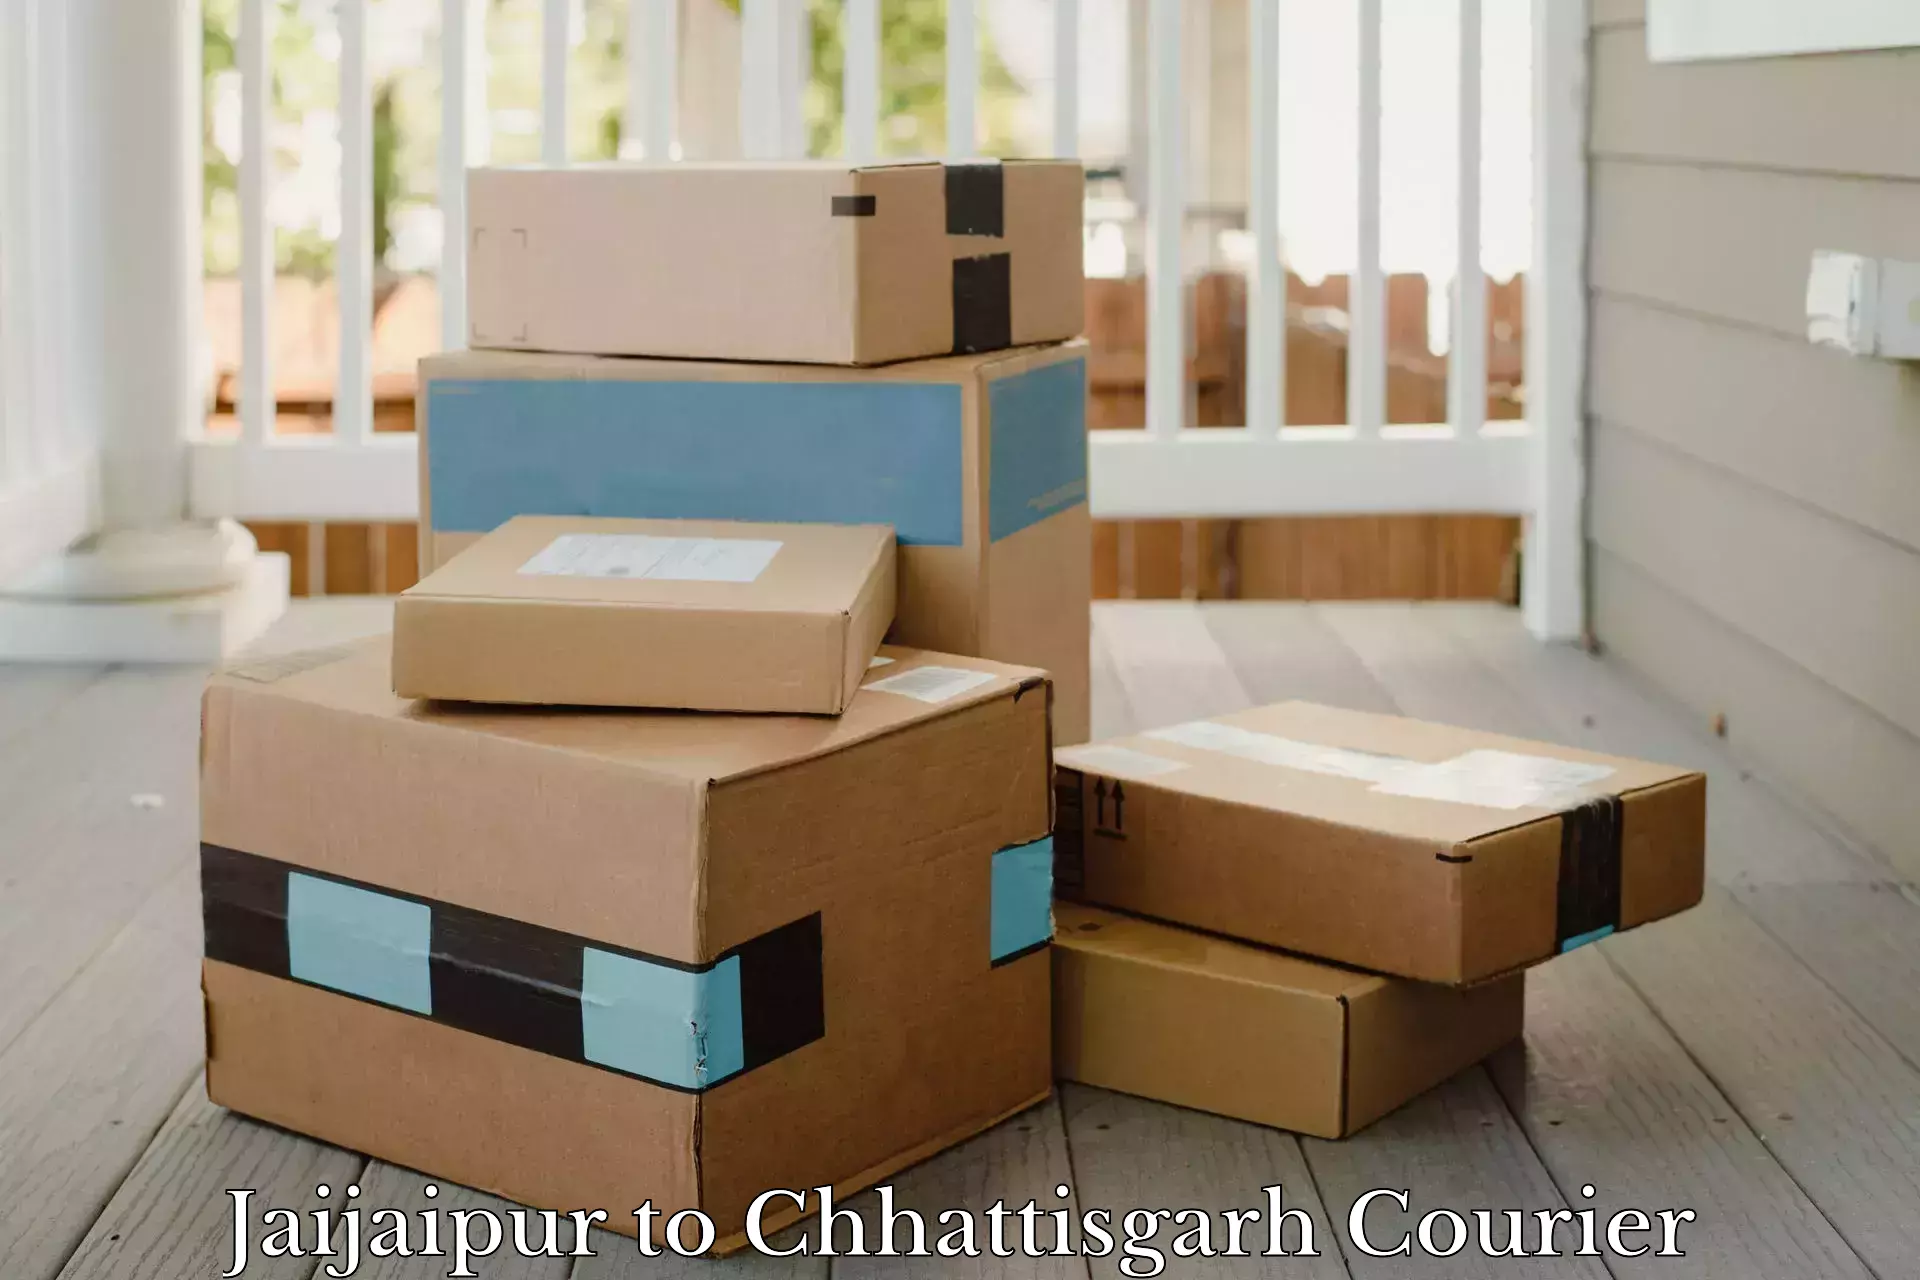 Innovative courier solutions Jaijaipur to Bilaspur